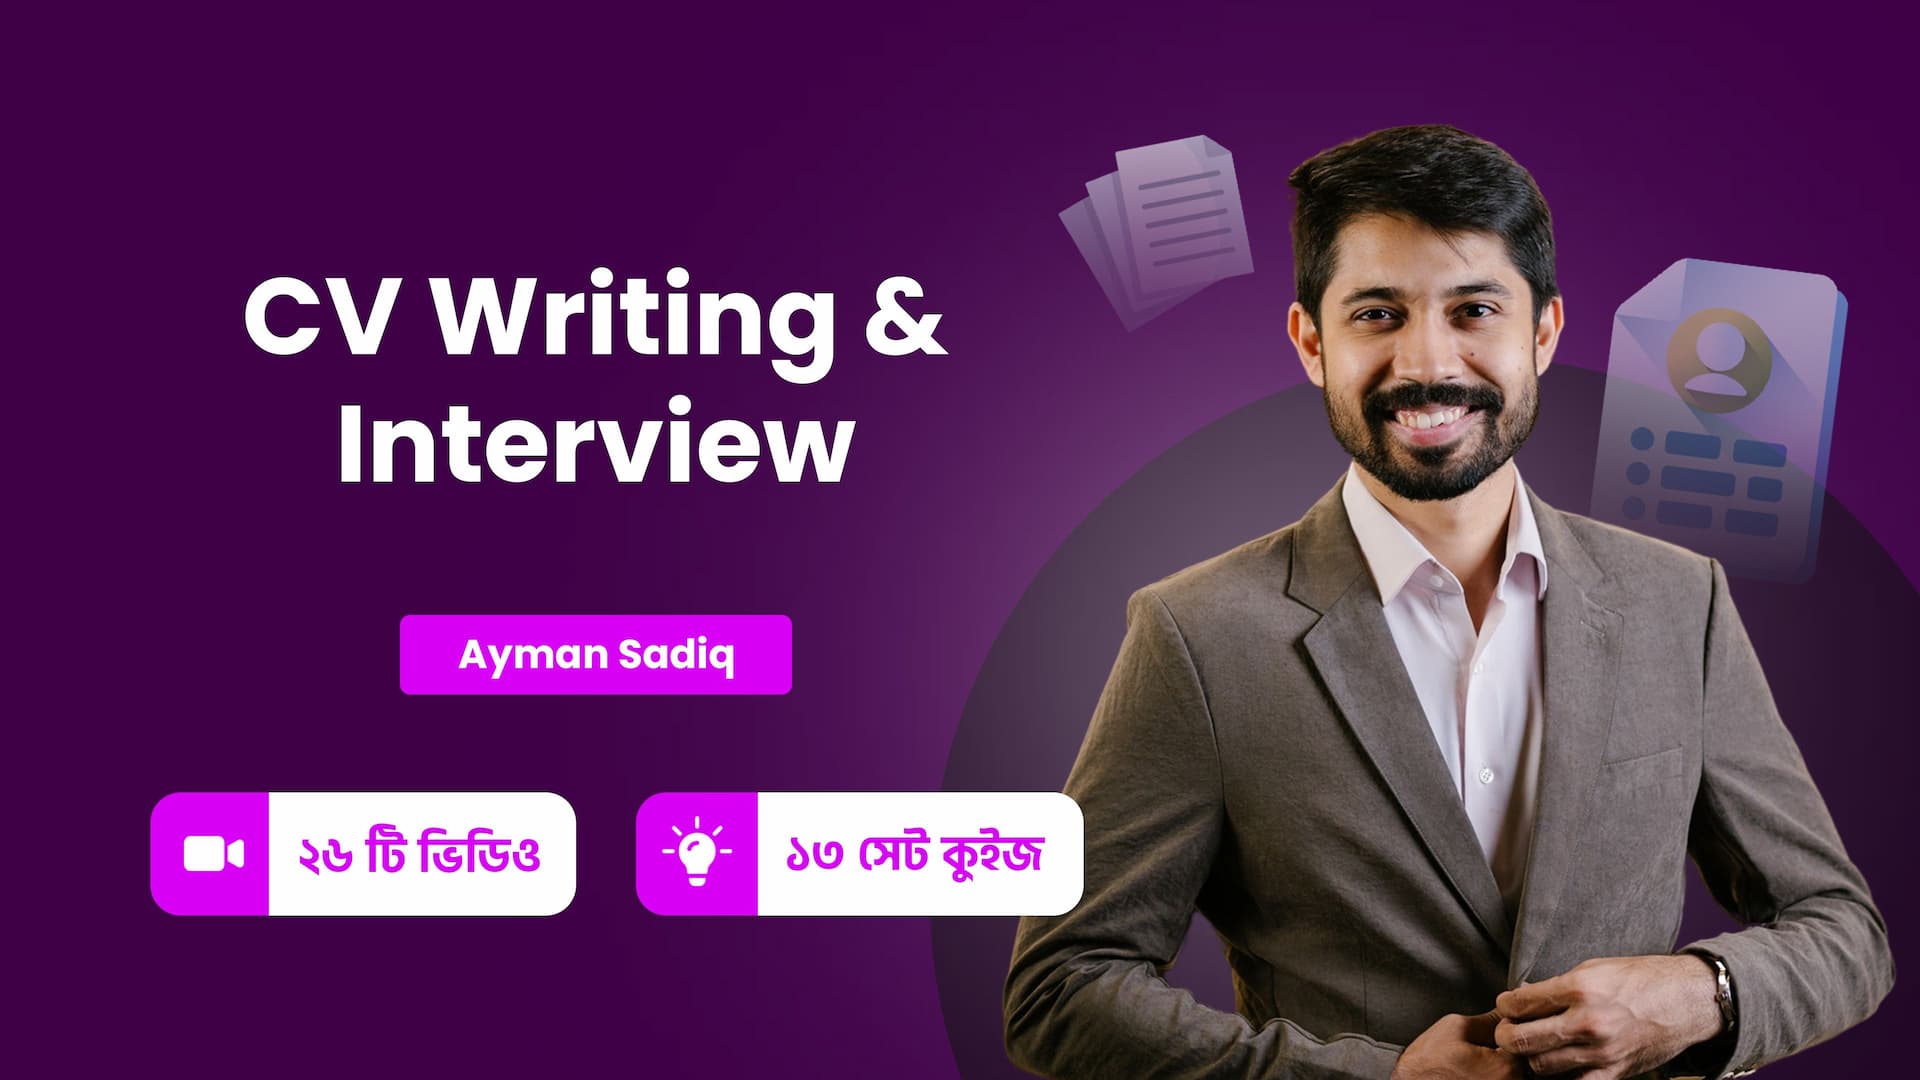 CV Writing & Interview